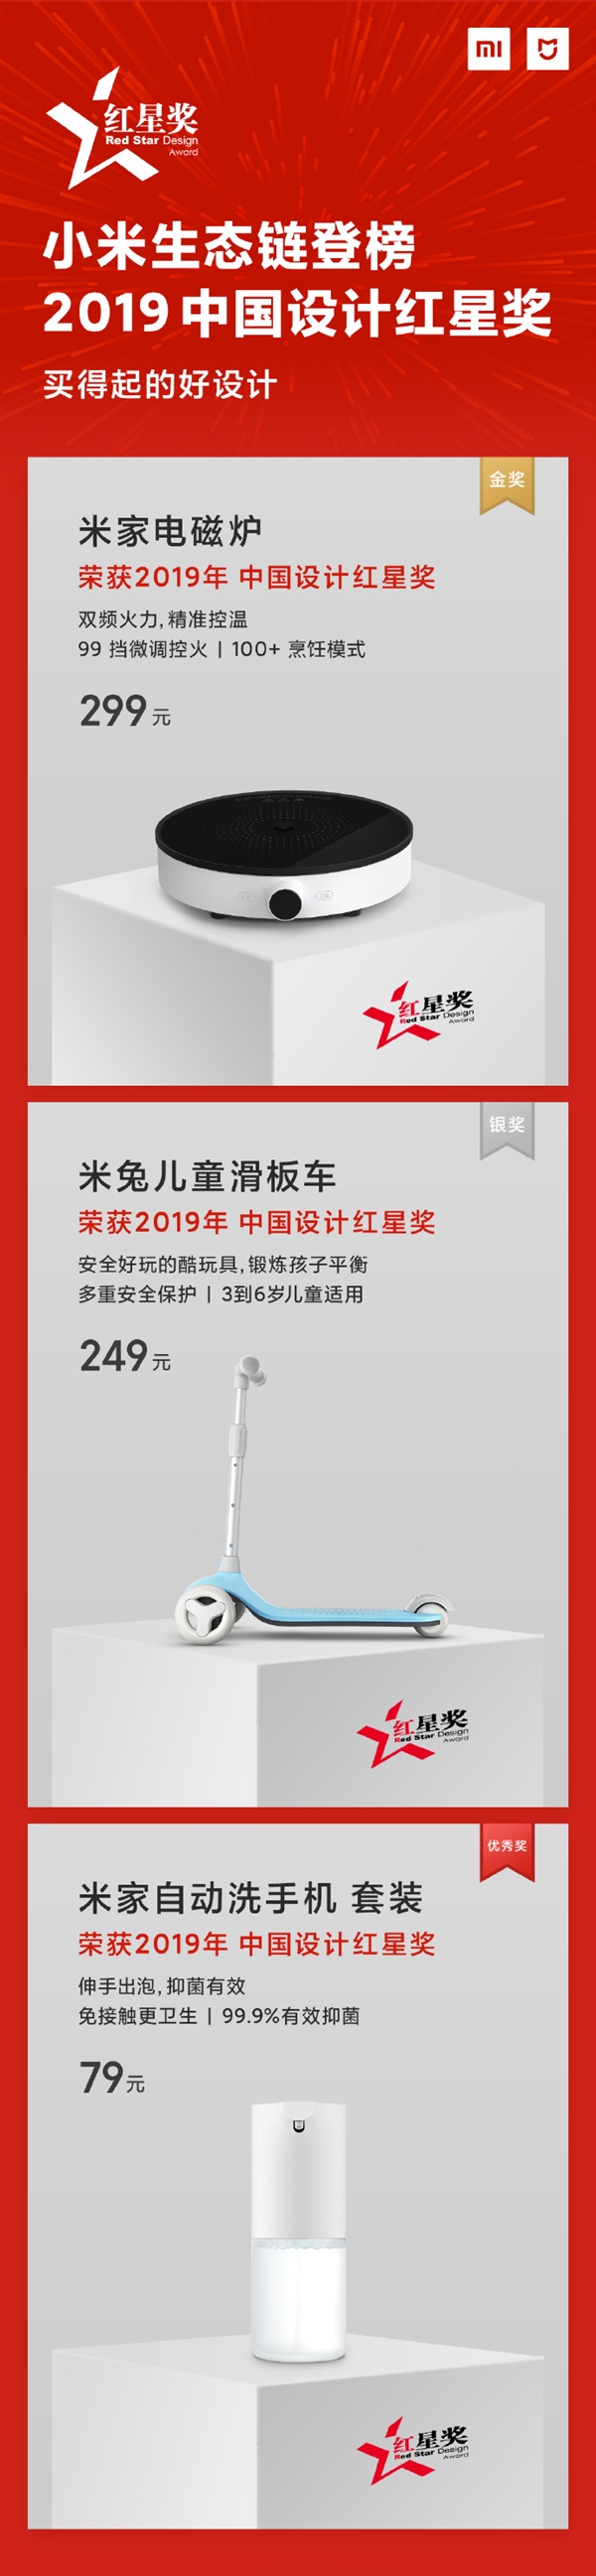 小米生态链3款产品获2019中国设计红星奖